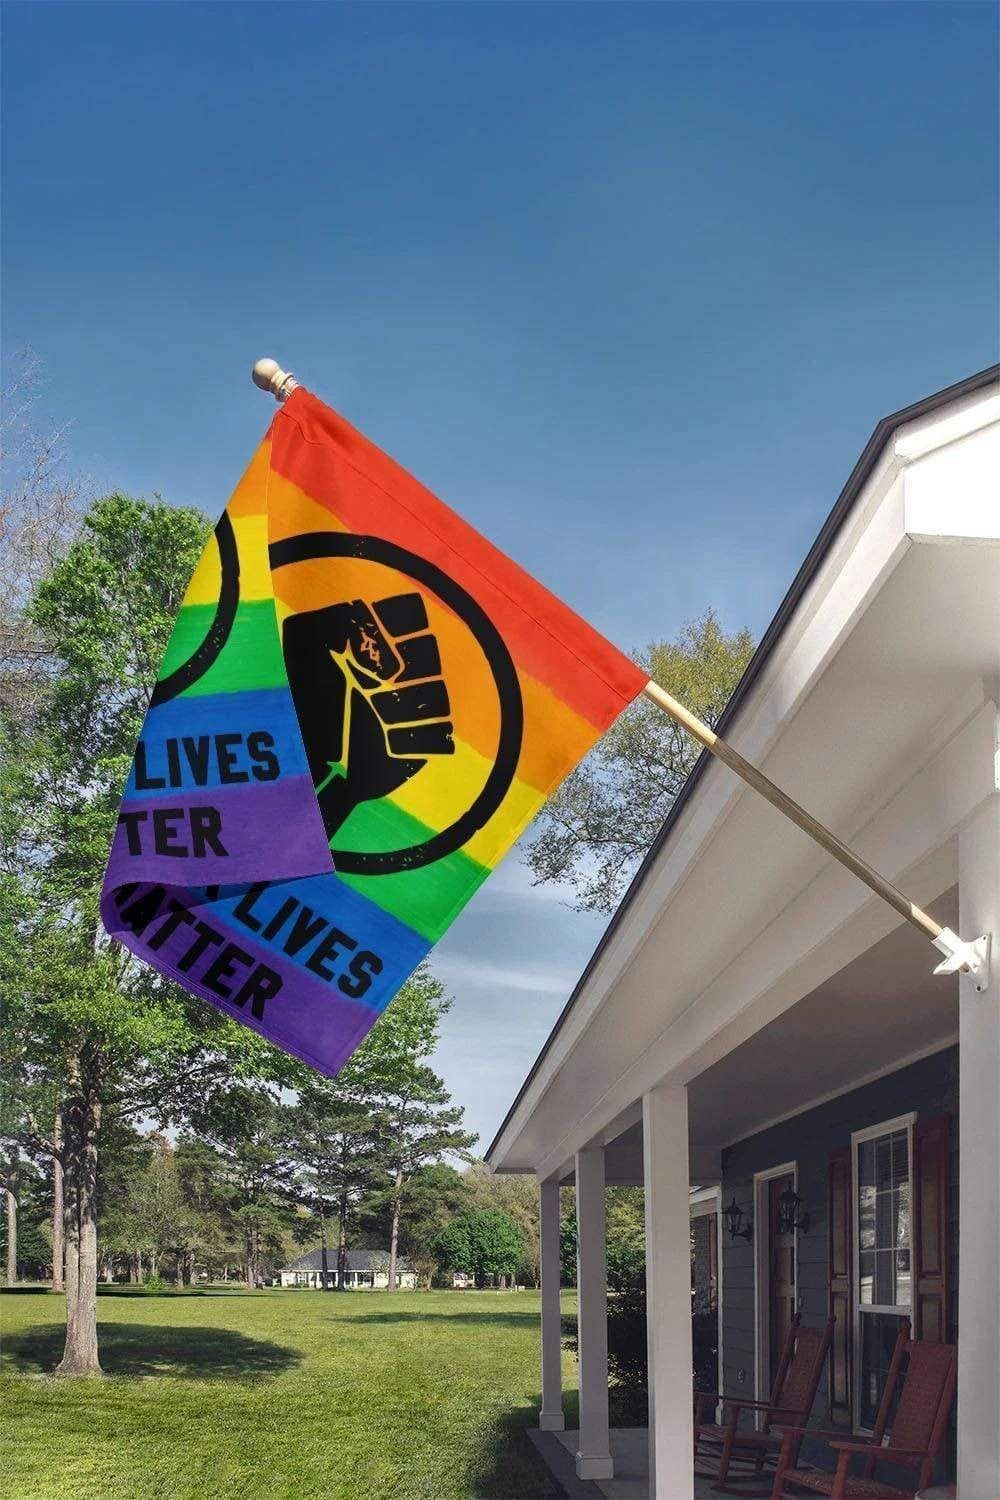 (Big Sale) LGBT Pride Black Lives Matter Flag